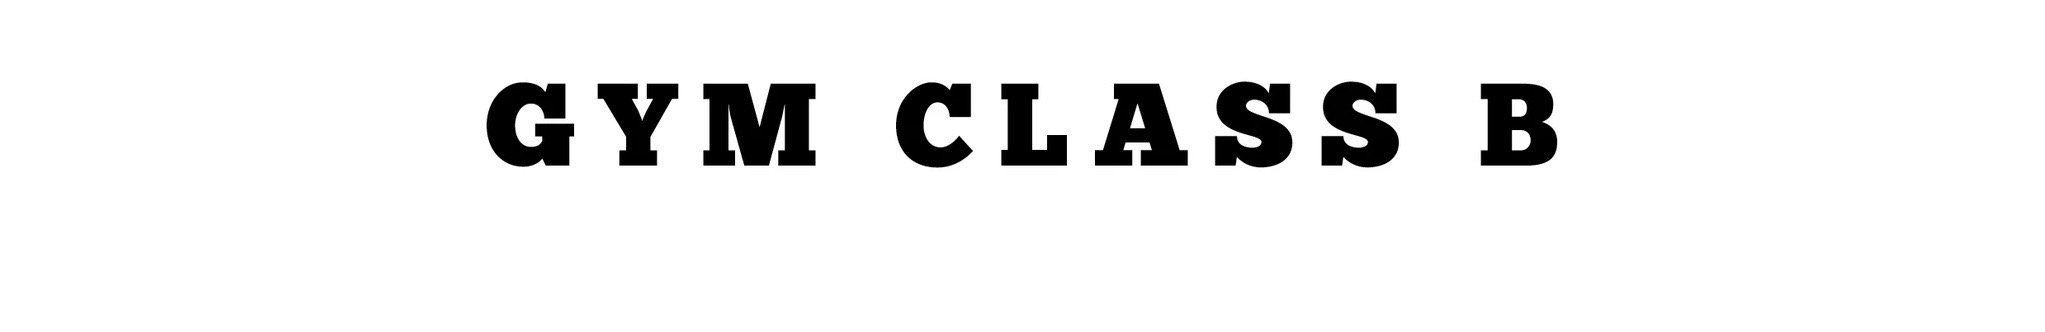 GYM CLASS B - Logo.jpg